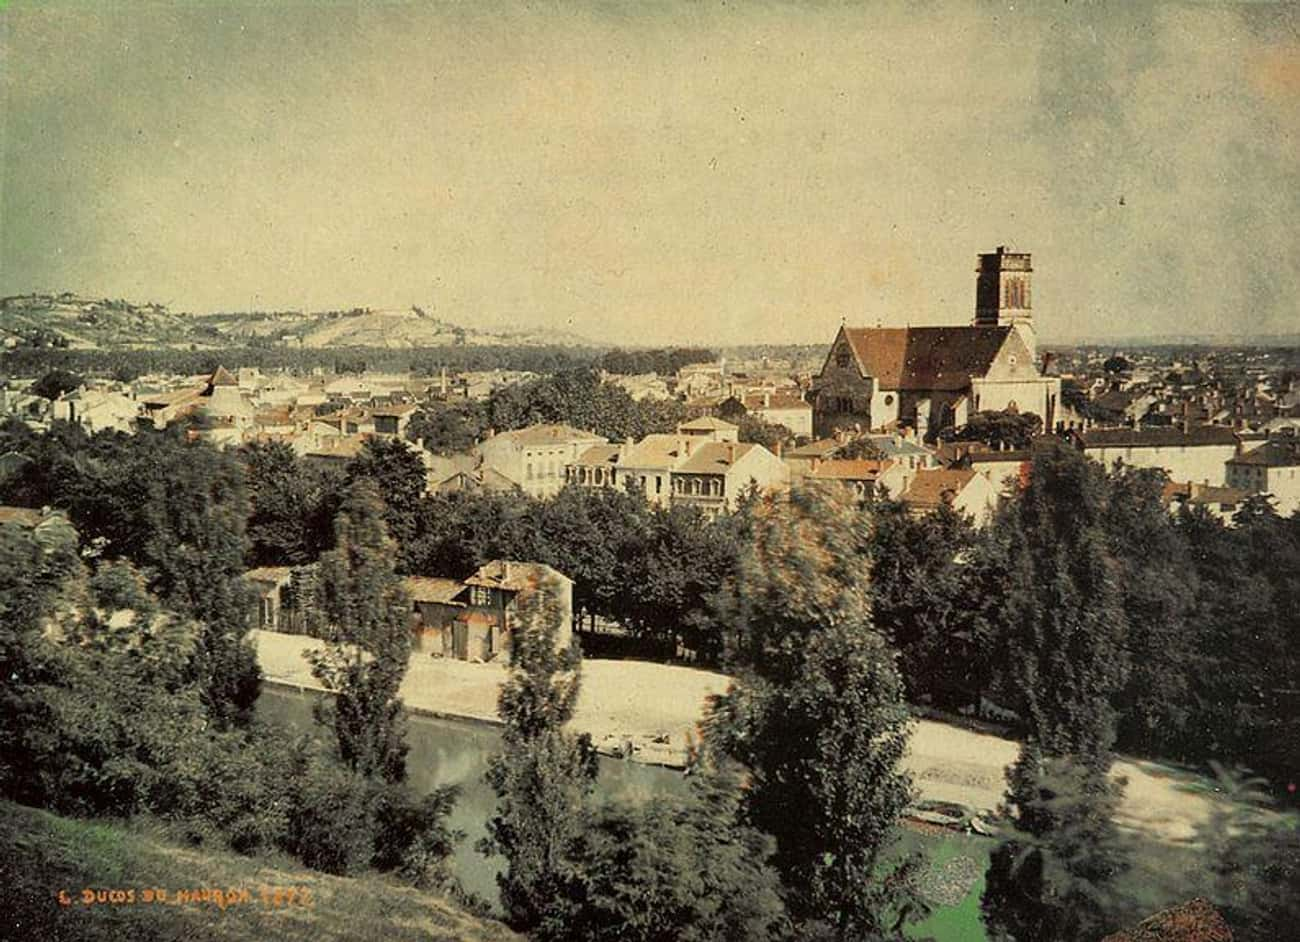 Fransa'nın Agen kentini gösteren bu renkli fotoğraf 1877 yılında çekilmiş.